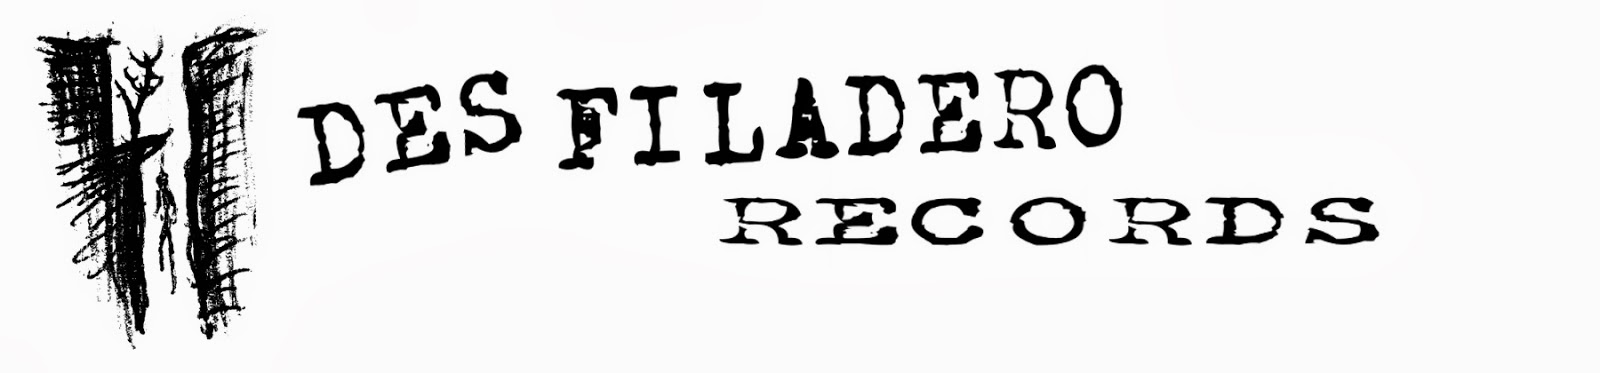 DESFILADERO RECORDS